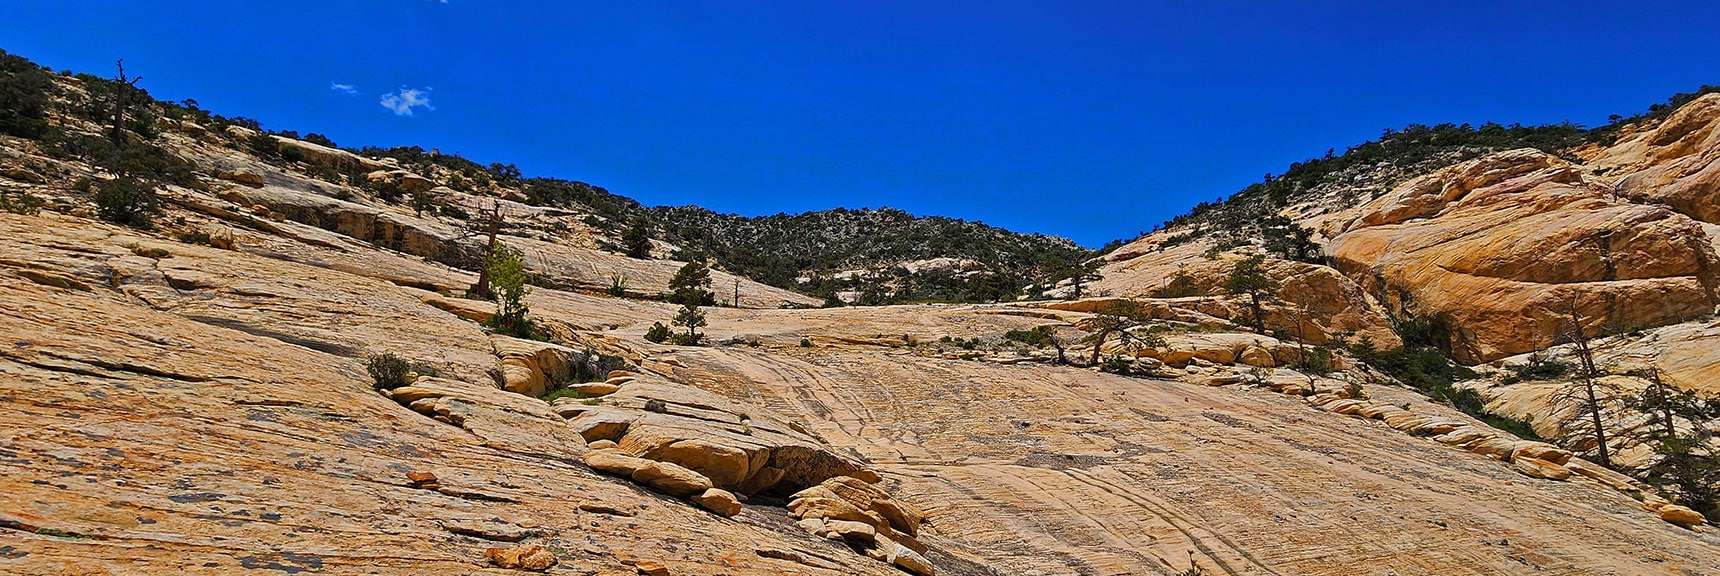 Return Up Sandstone Ledge Toward Upper Crest Ridgeline | Little Zion | Rainbow Mountain Wilderness, Nevada